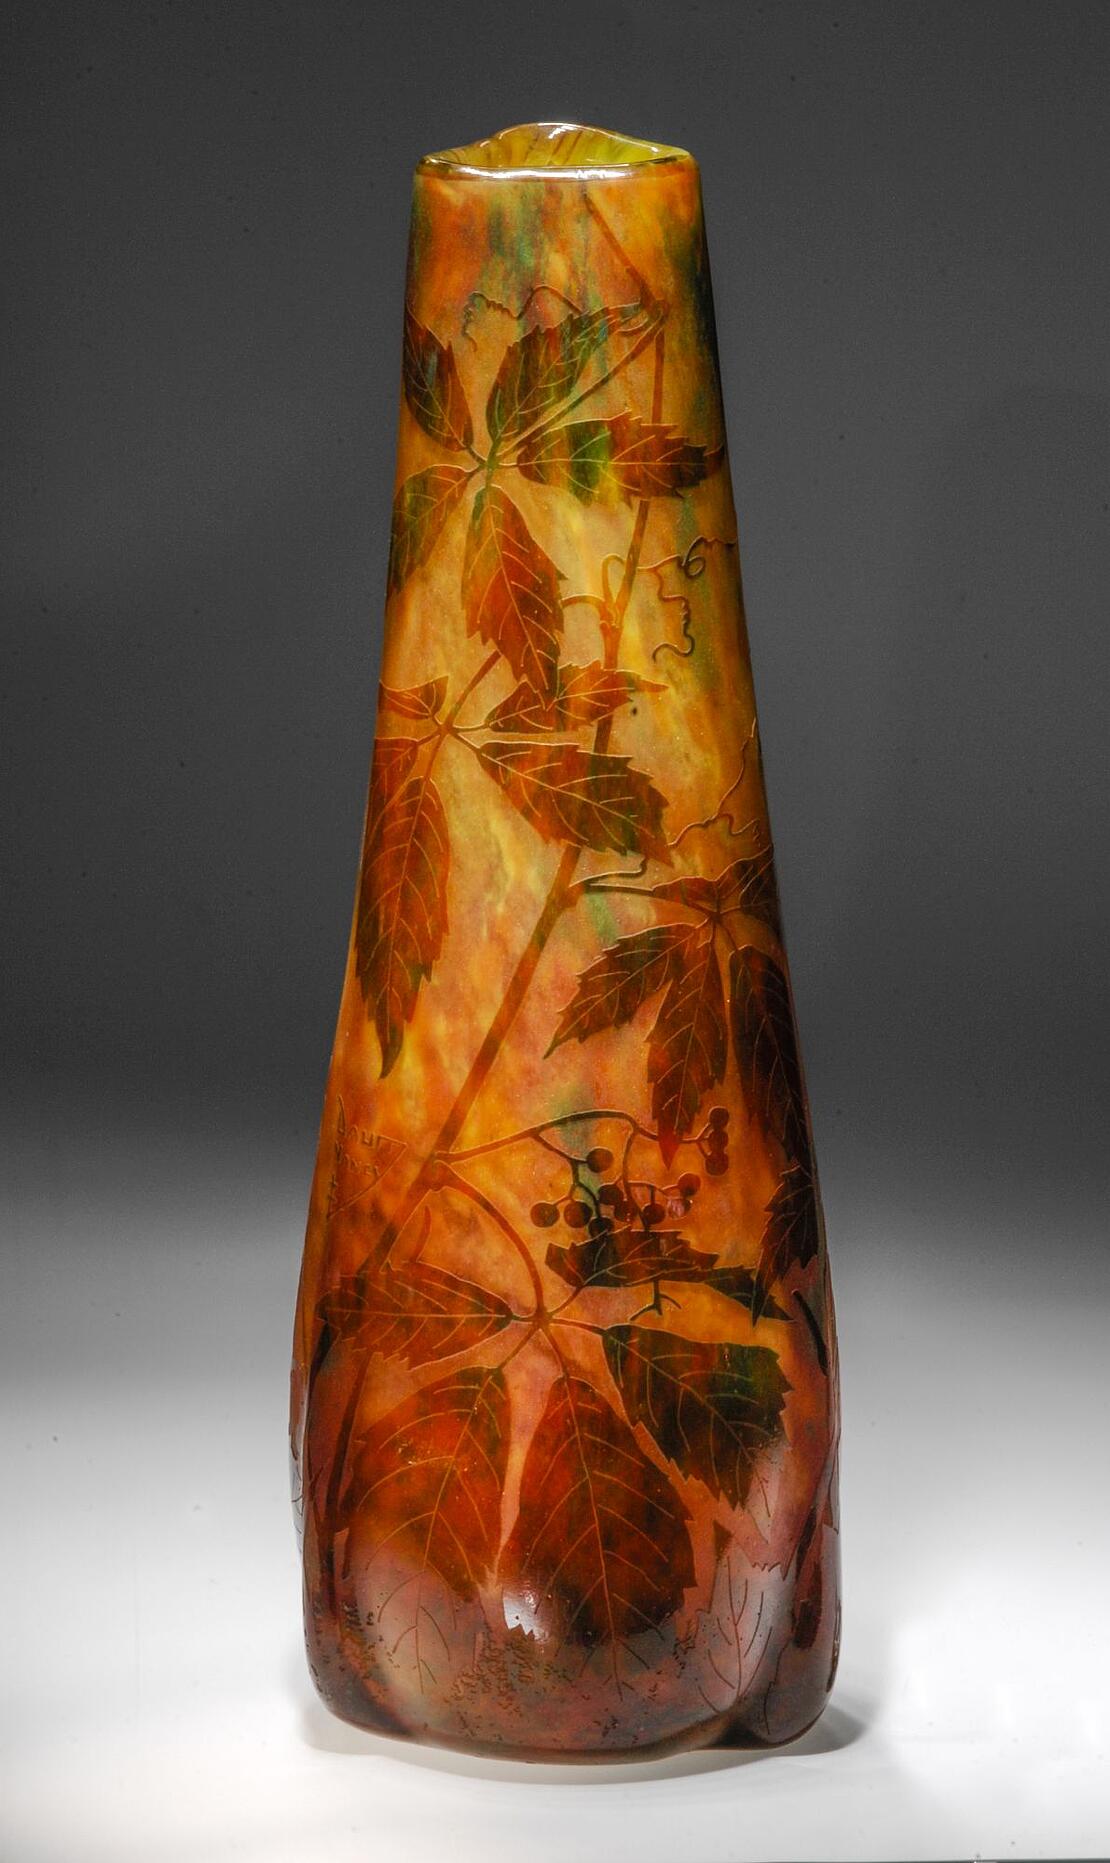 gelb-orangefarbige Glasvase mit Dekor aus Weinblättern und -früchten